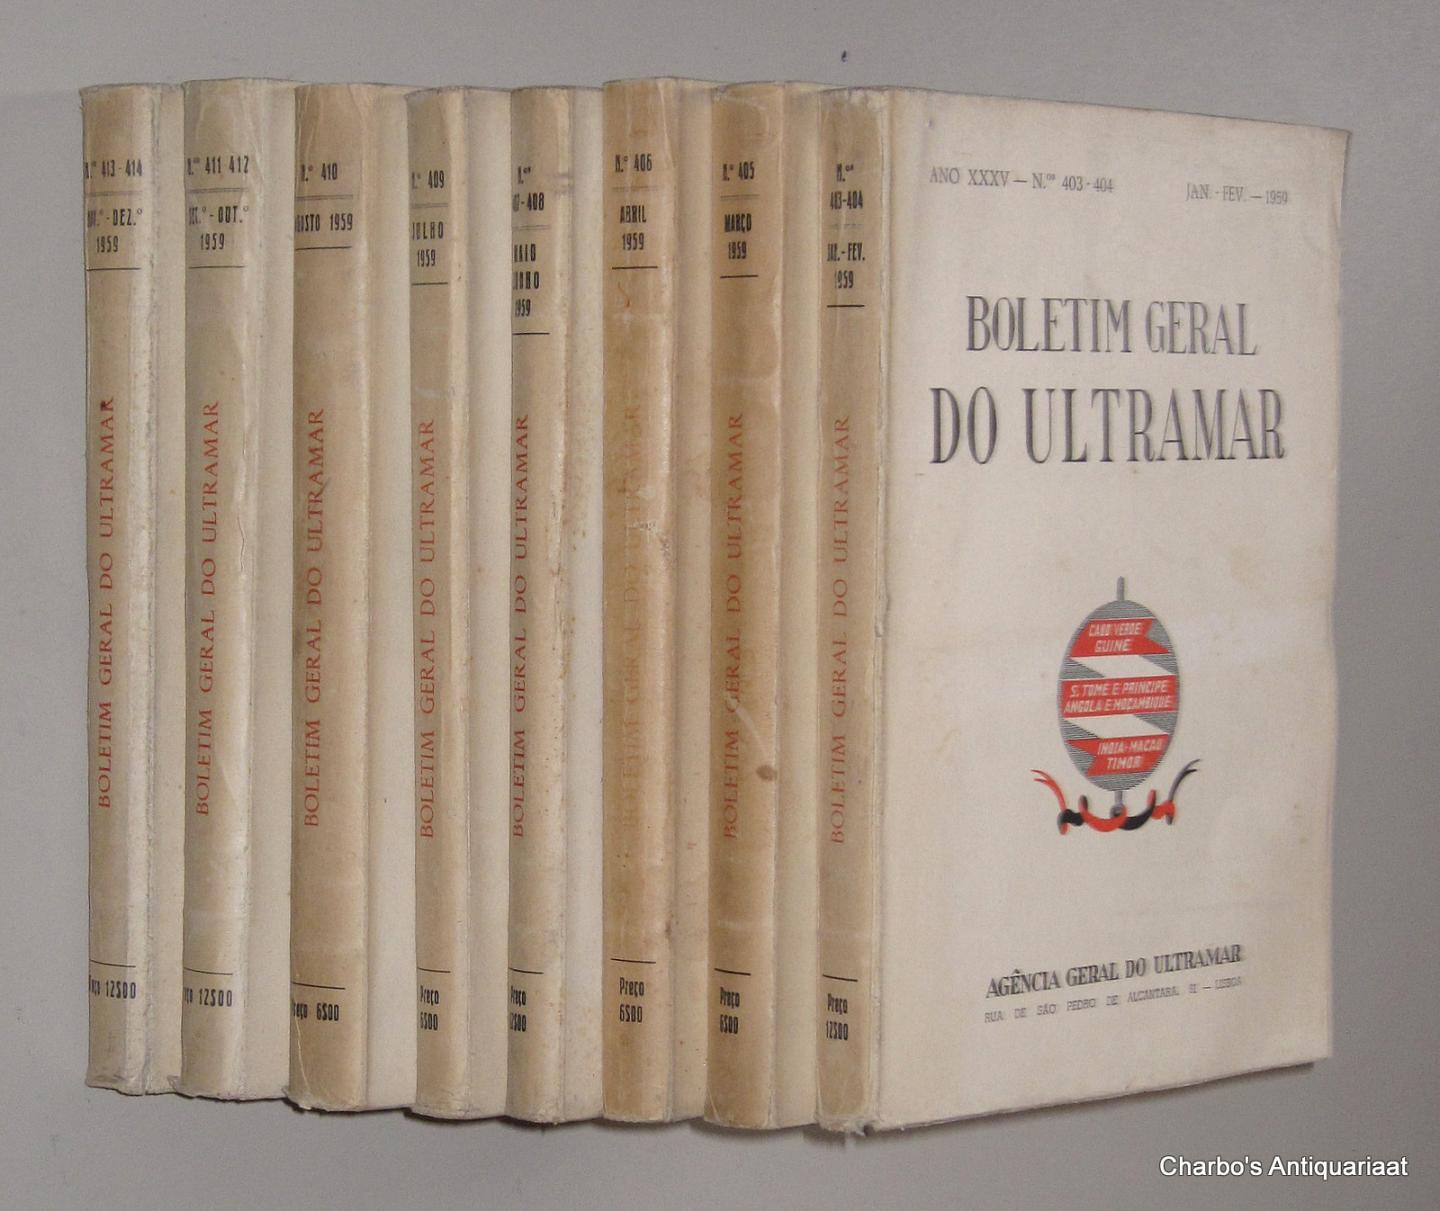 AGENCIA GERAL DO ULTRAMAR, - Boletim Geral do Ultramar, ano XXXV No. 403, Janeiro - No. 414, Dezembro 1959.